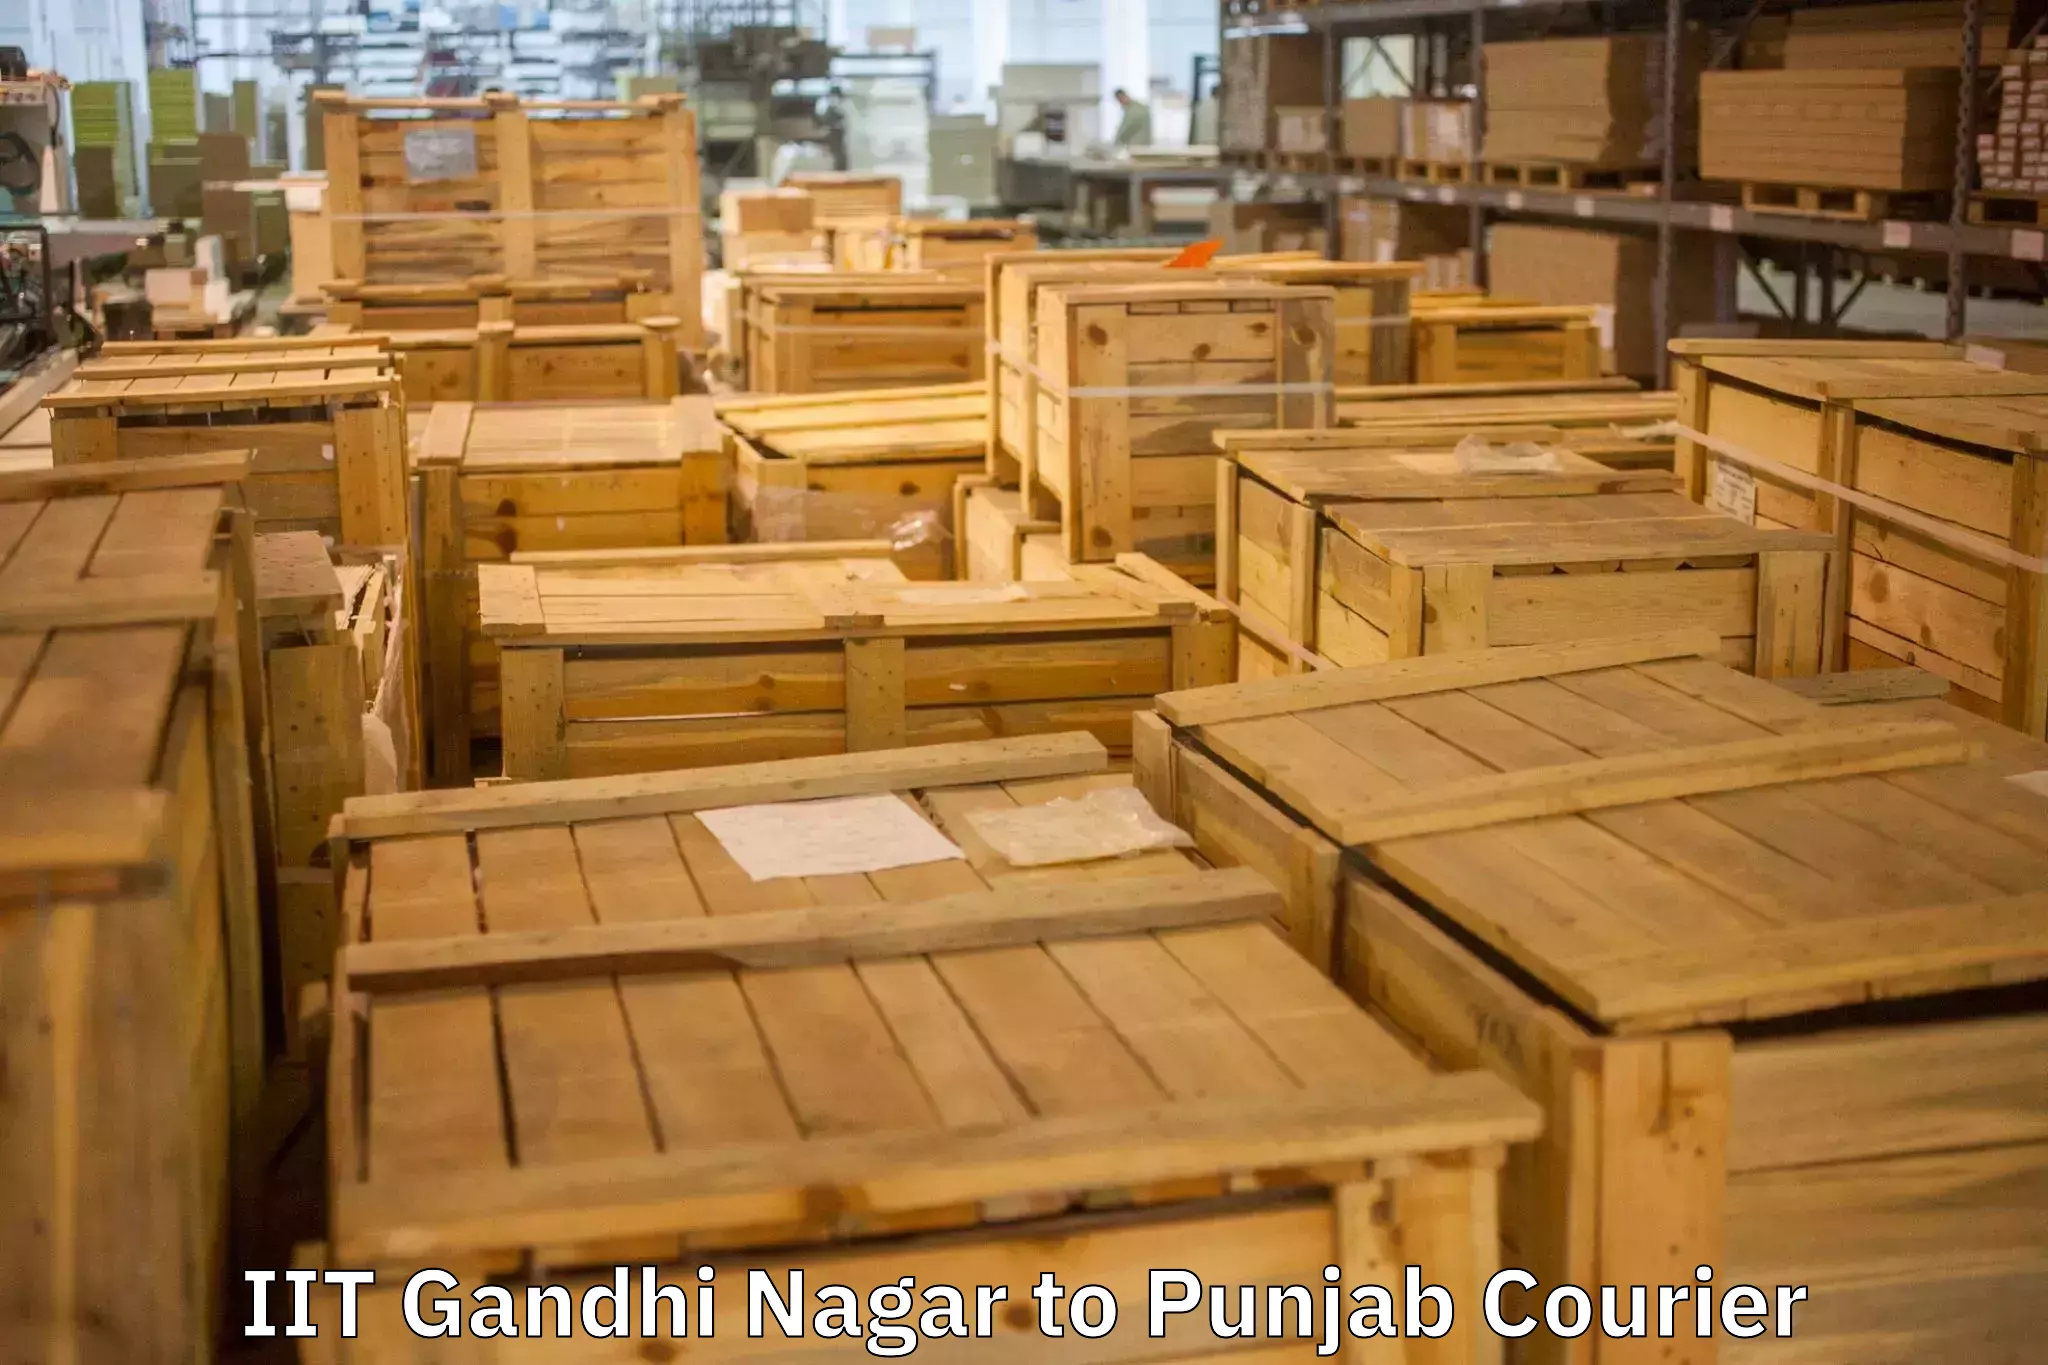 Stress-free furniture moving IIT Gandhi Nagar to Faridkot